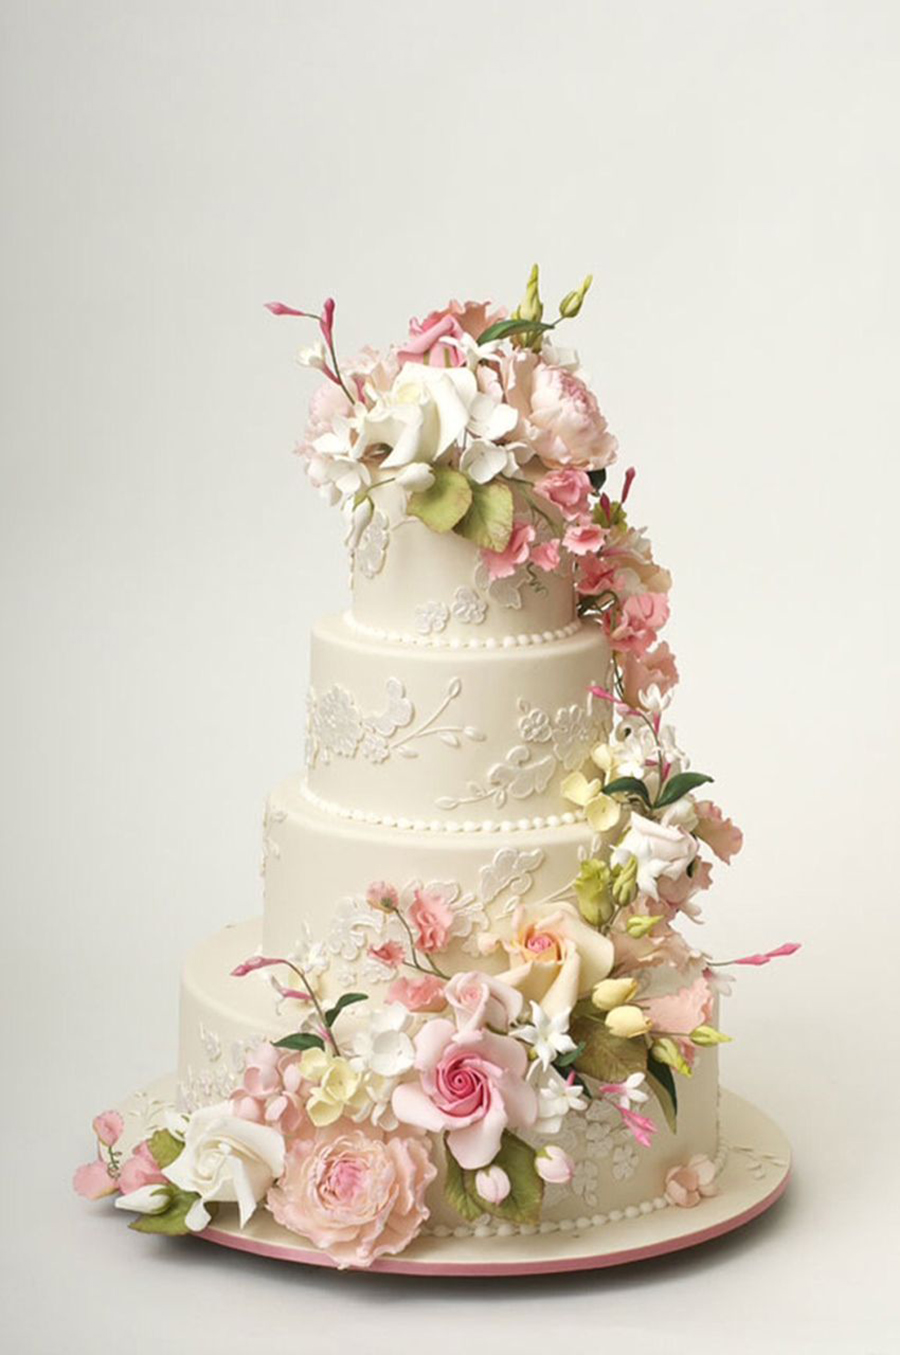 bánh cưới được trang trí với hoa tươi